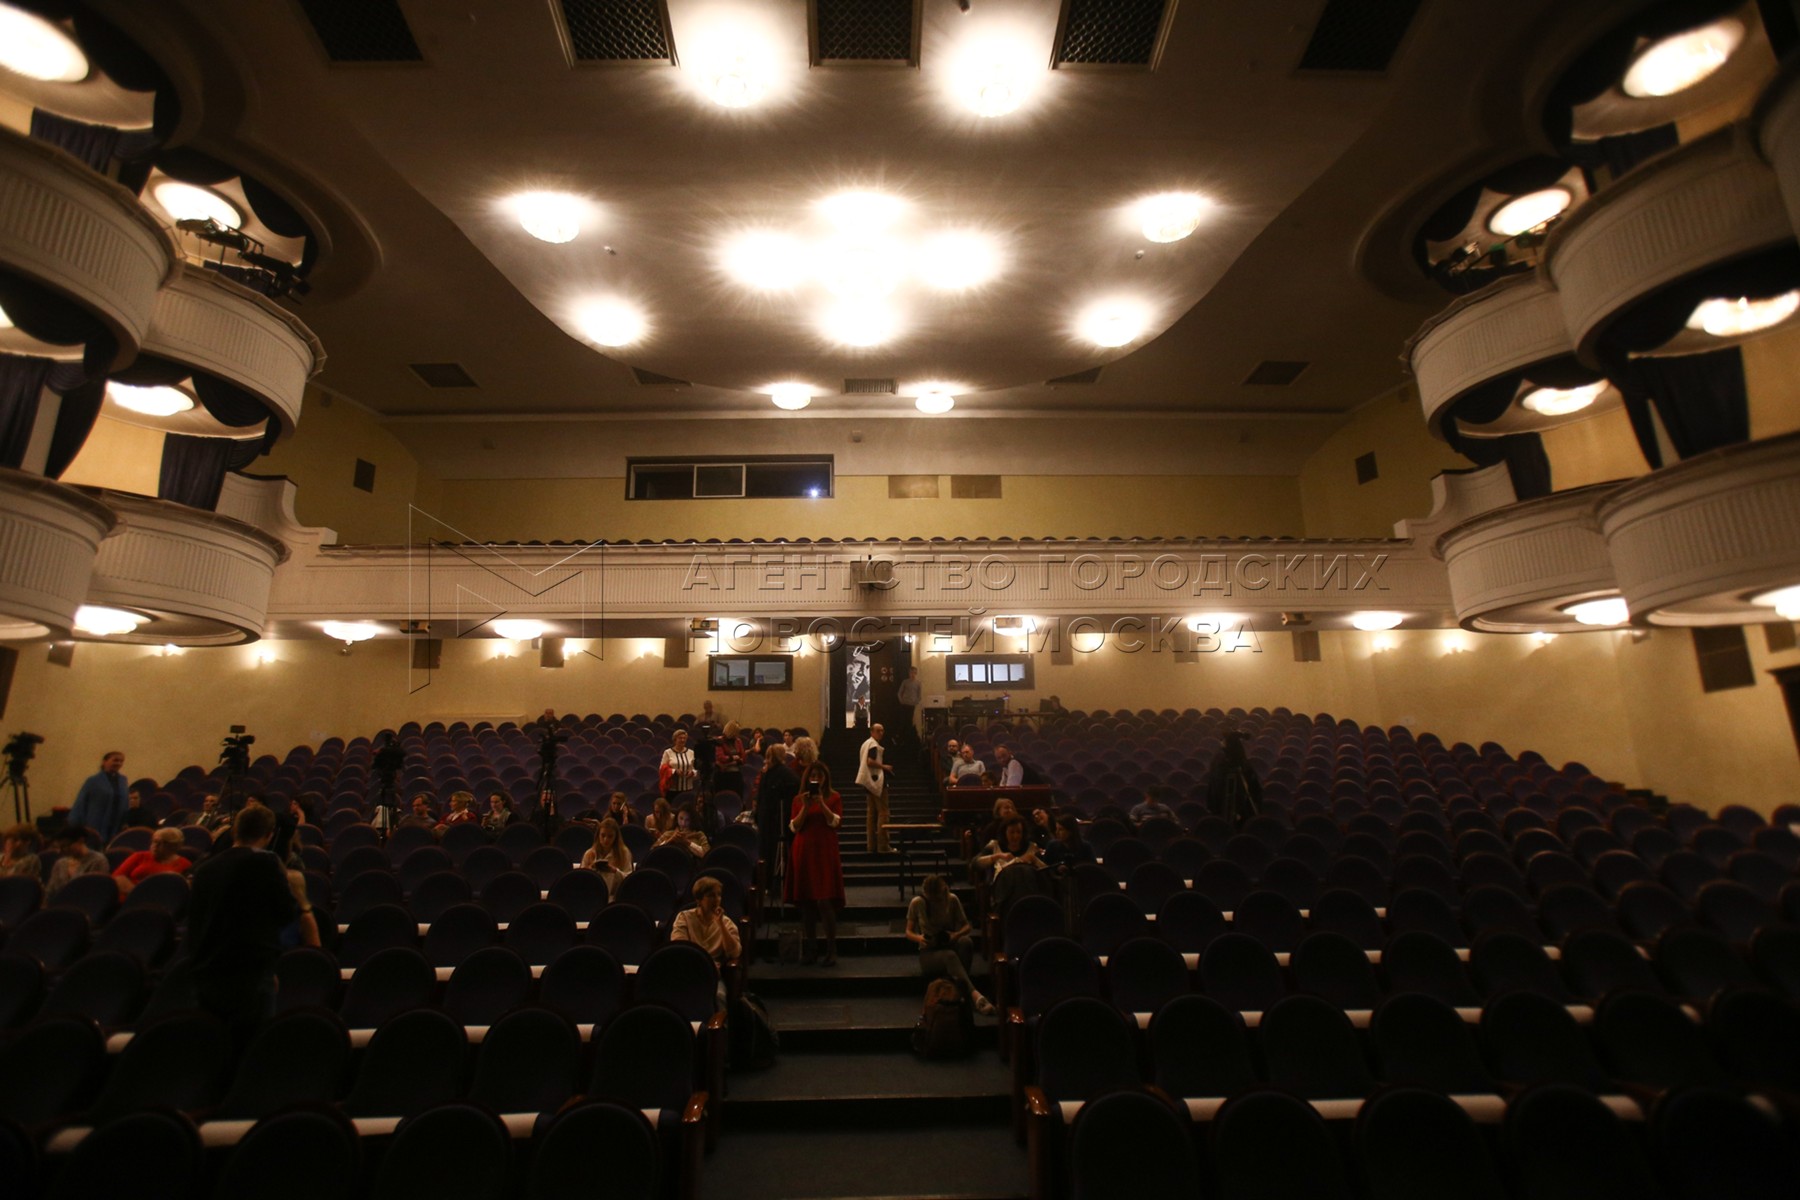 Губернский театр в кузьминках